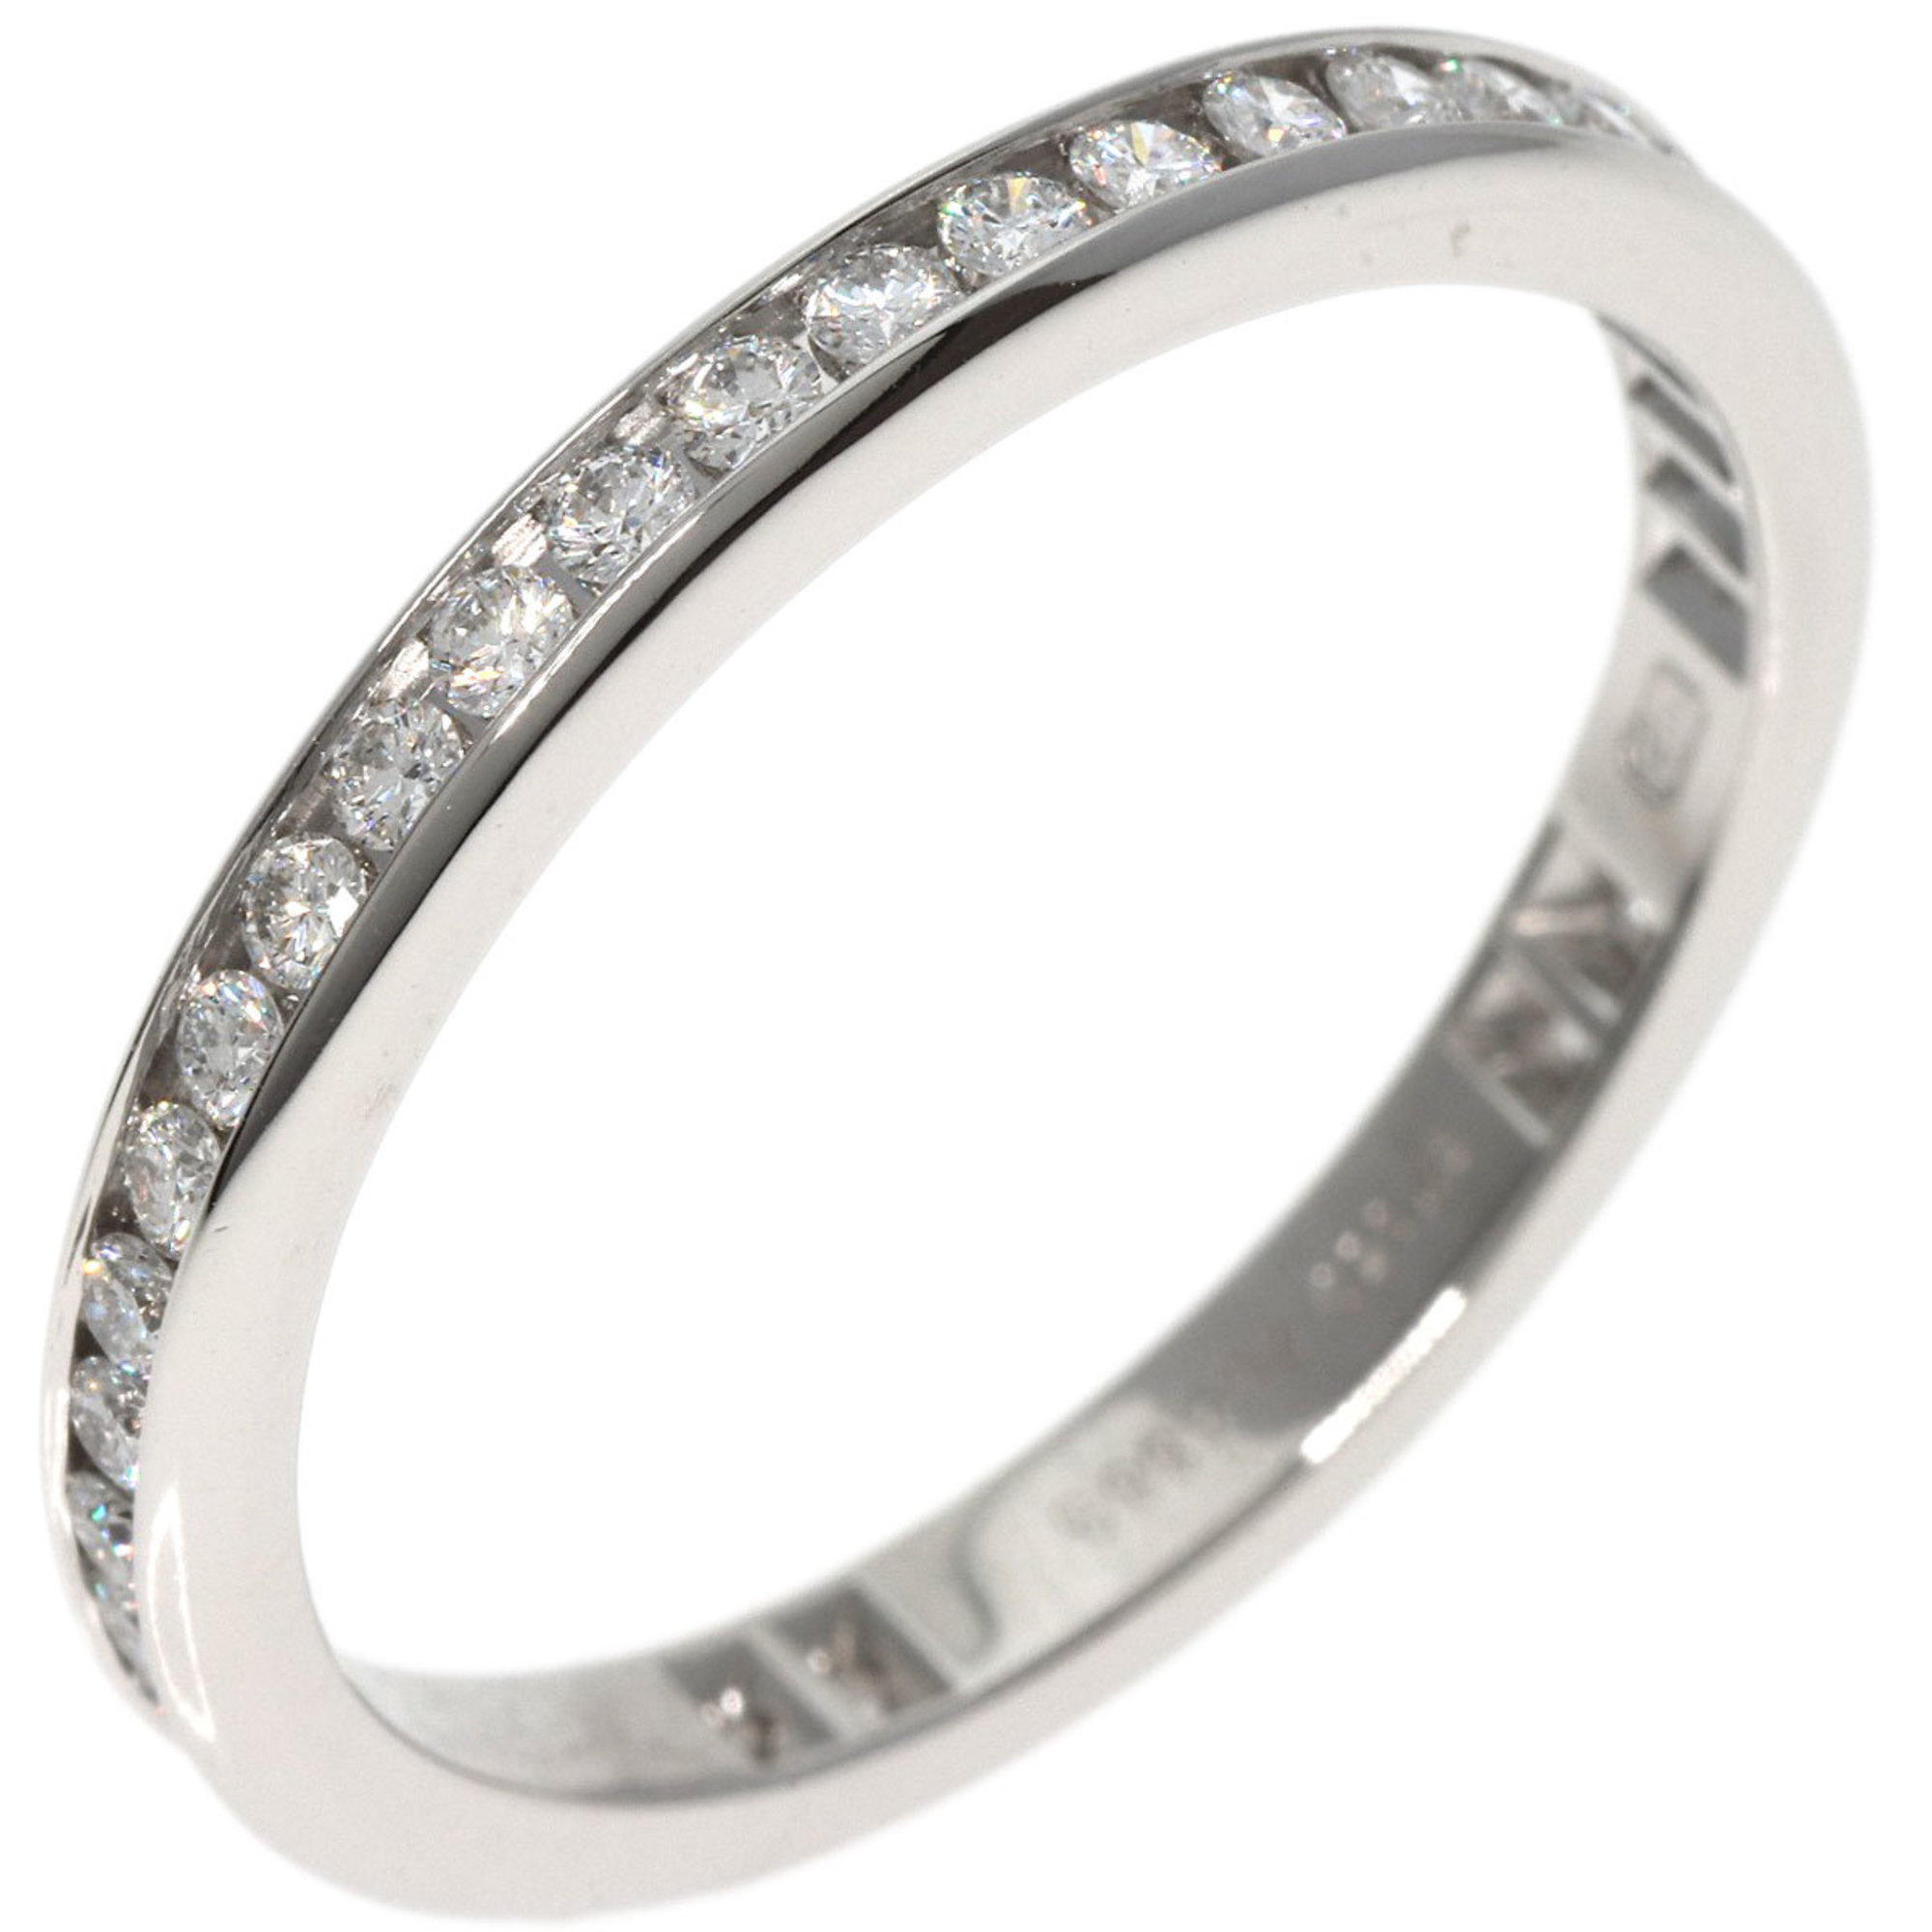 Harry Winston Full Eternity Channel Setting Diamond Ring, Platinum PT950, Men's and Women's